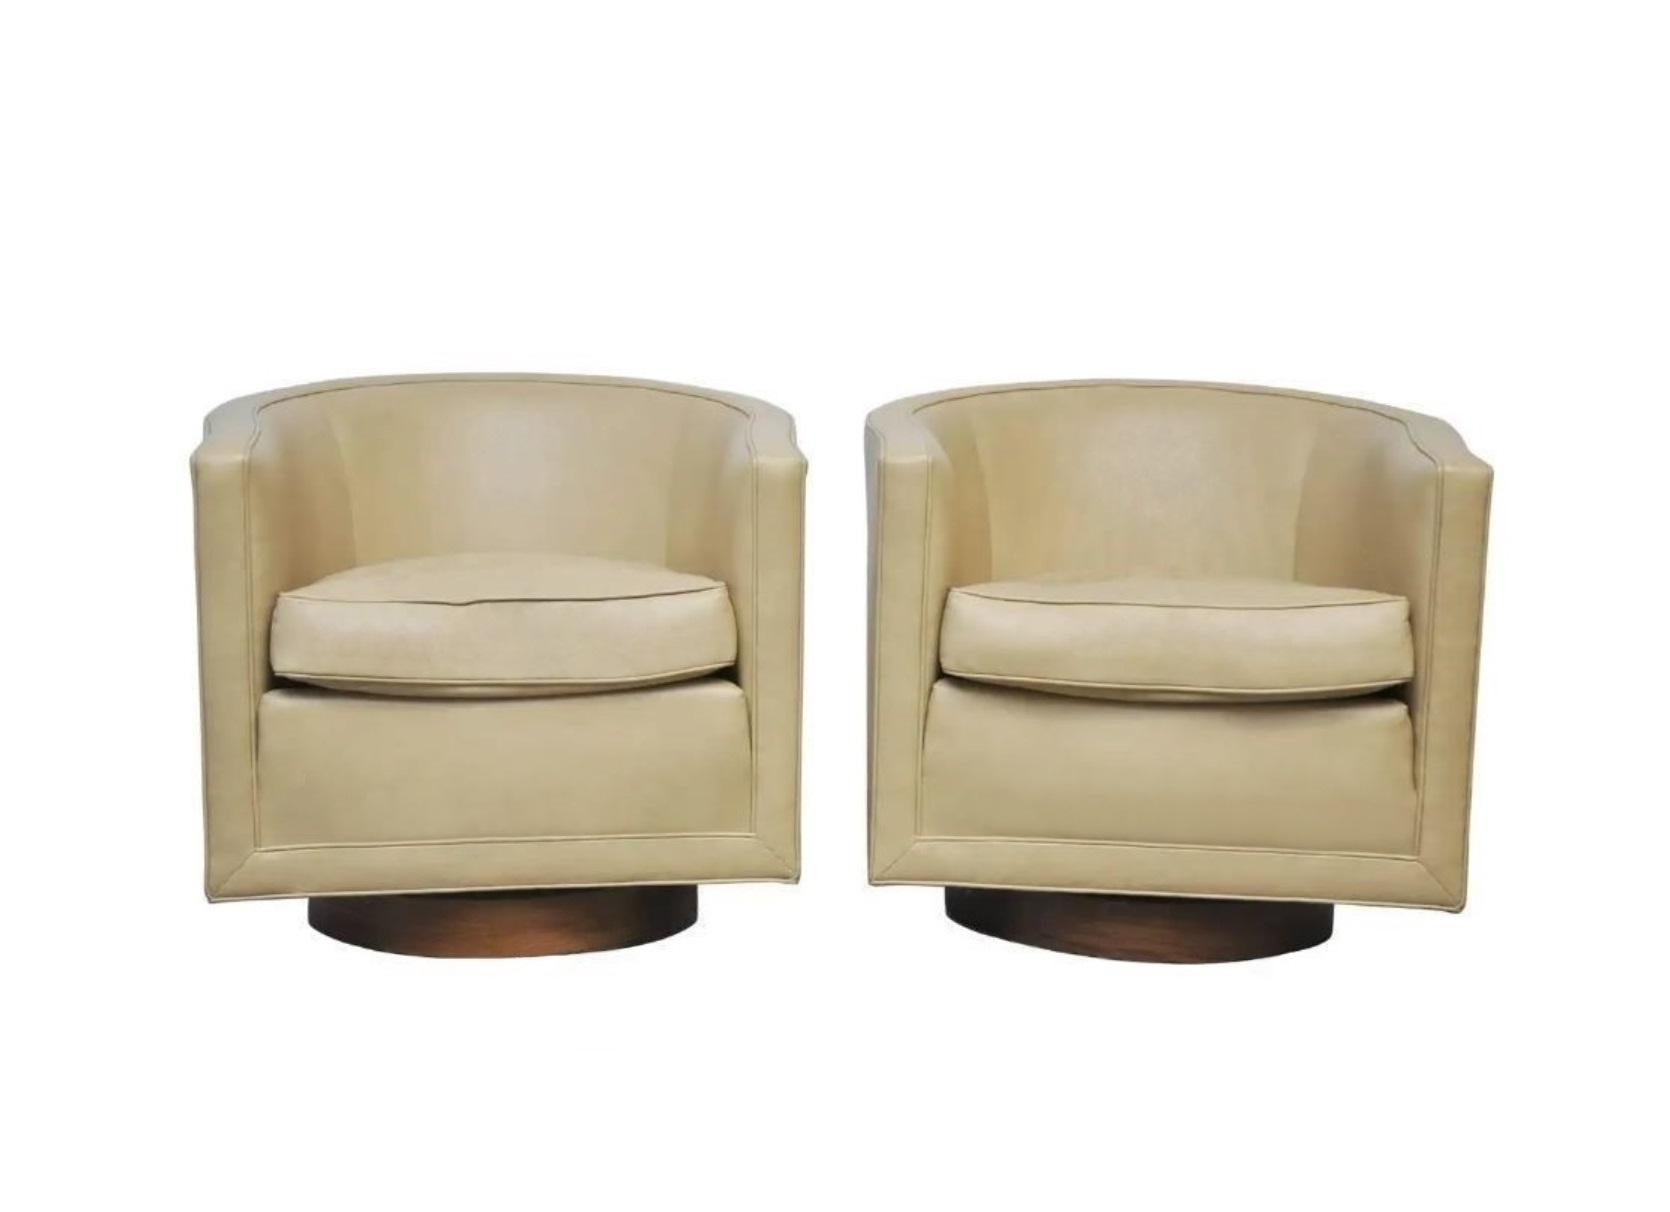 Bringen Sie etwas verspielte Eleganz in Ihren Raum mit diesen drehbaren Dunbar-Stühlen von Edward Wormley aus den 1960er Jahren. Sein unverkennbarer Stil, der sich durch klare Linien und architektonische Schlichtheit auszeichnet, ist durchdacht und